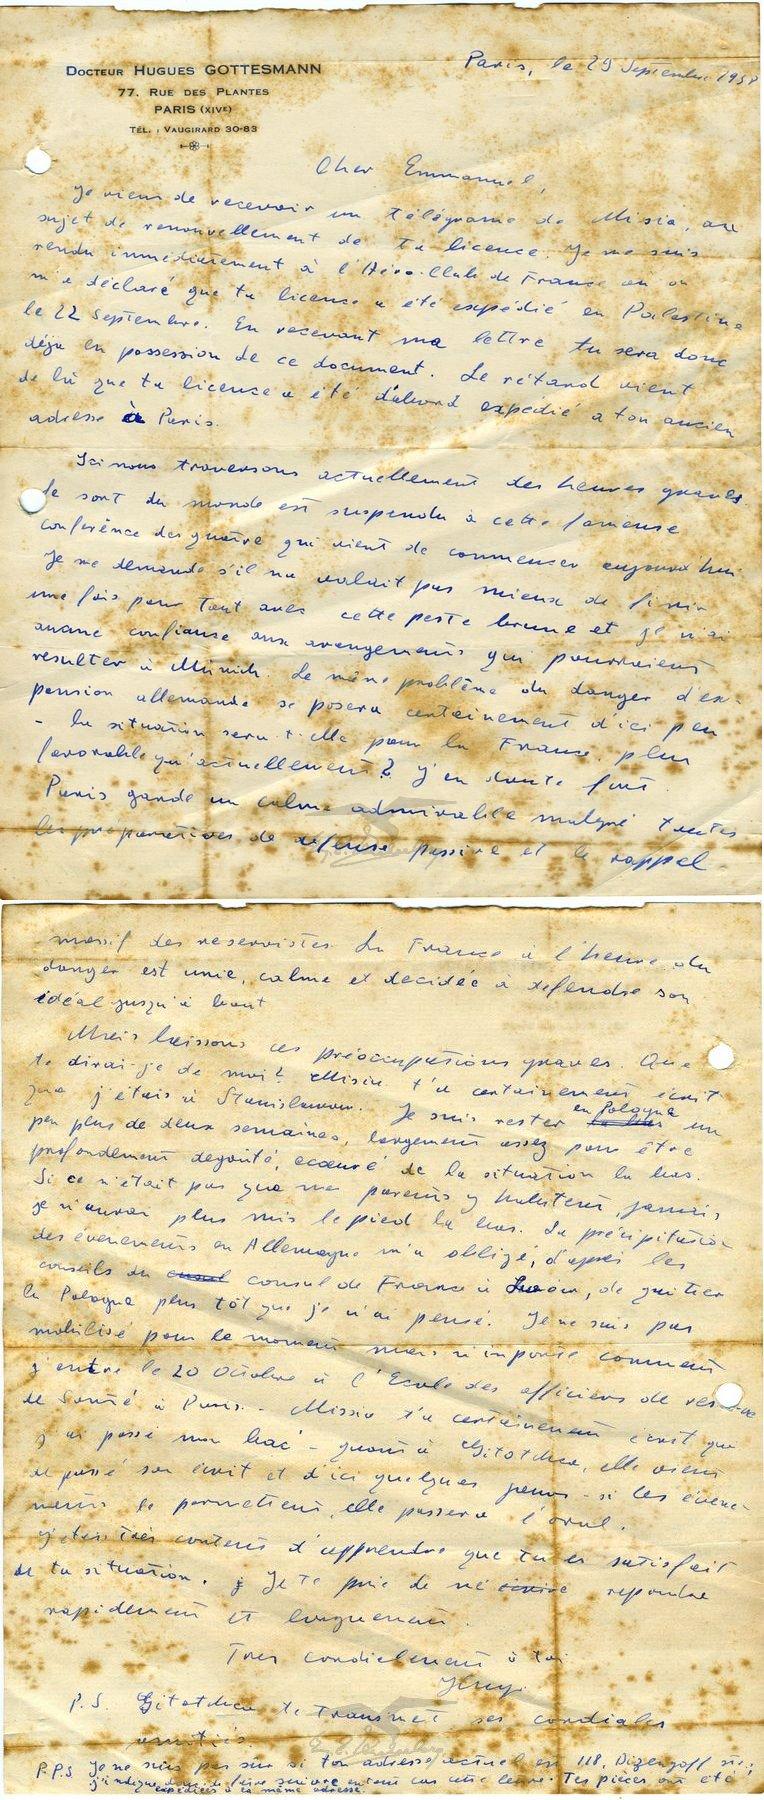 מכתב מדוקטור הוגו גוטסמן, פריס, לעמנואל צוקרברג, תל אביב